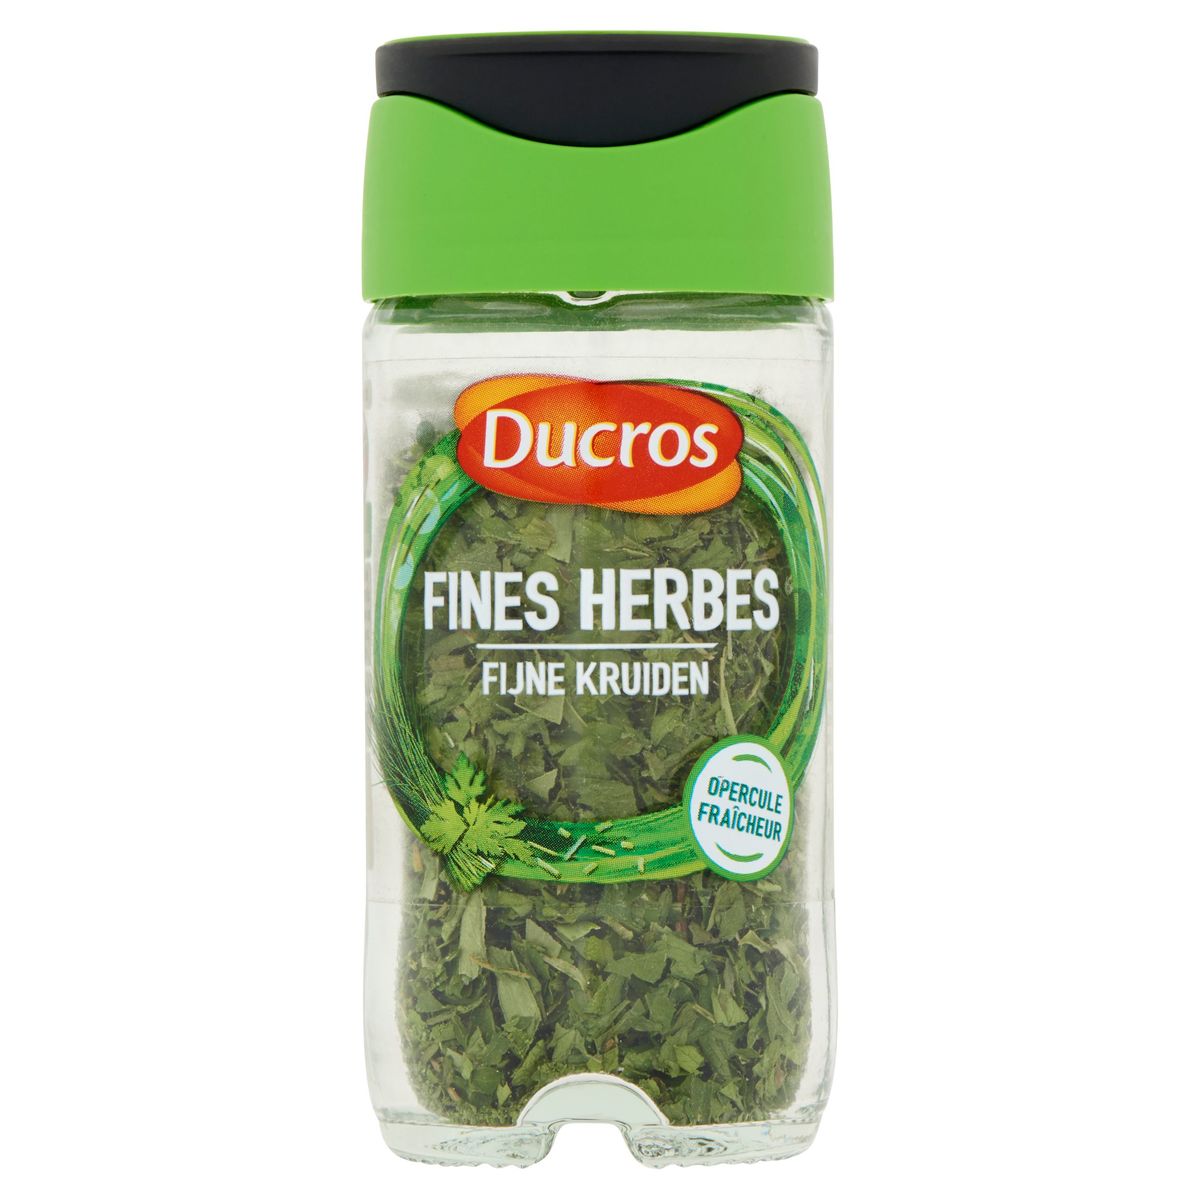 Ducros Fines Herbes 7 g